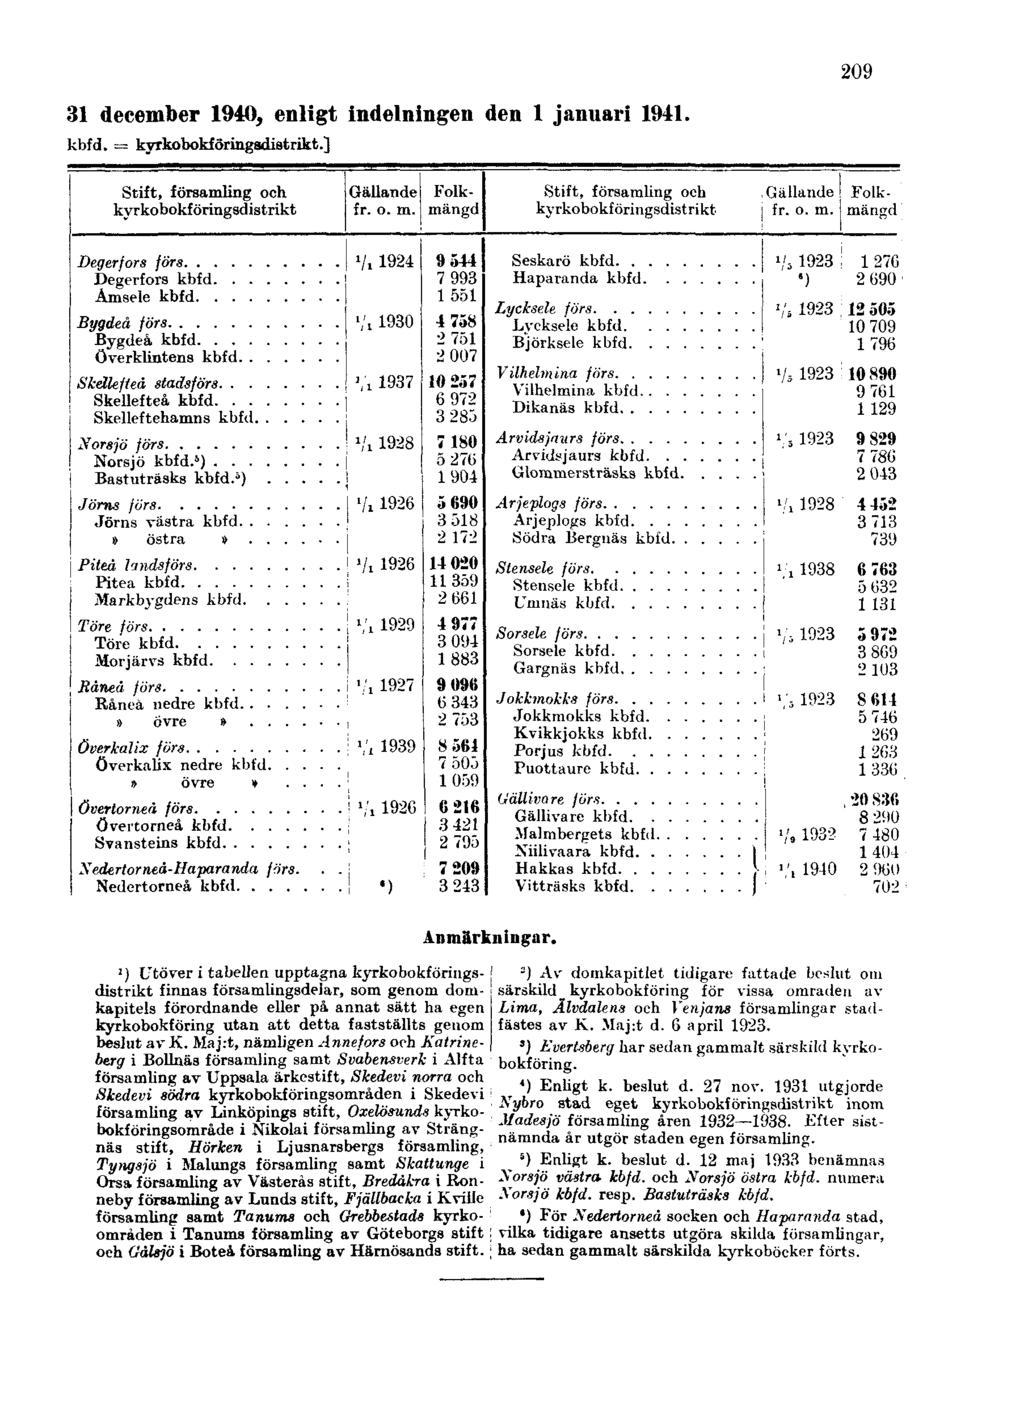 31 december 1940, enligt indelningen den 1 januari 1941. kbfd. = kyrkobokföringsdistrikt.] 209 Anmärkningar.